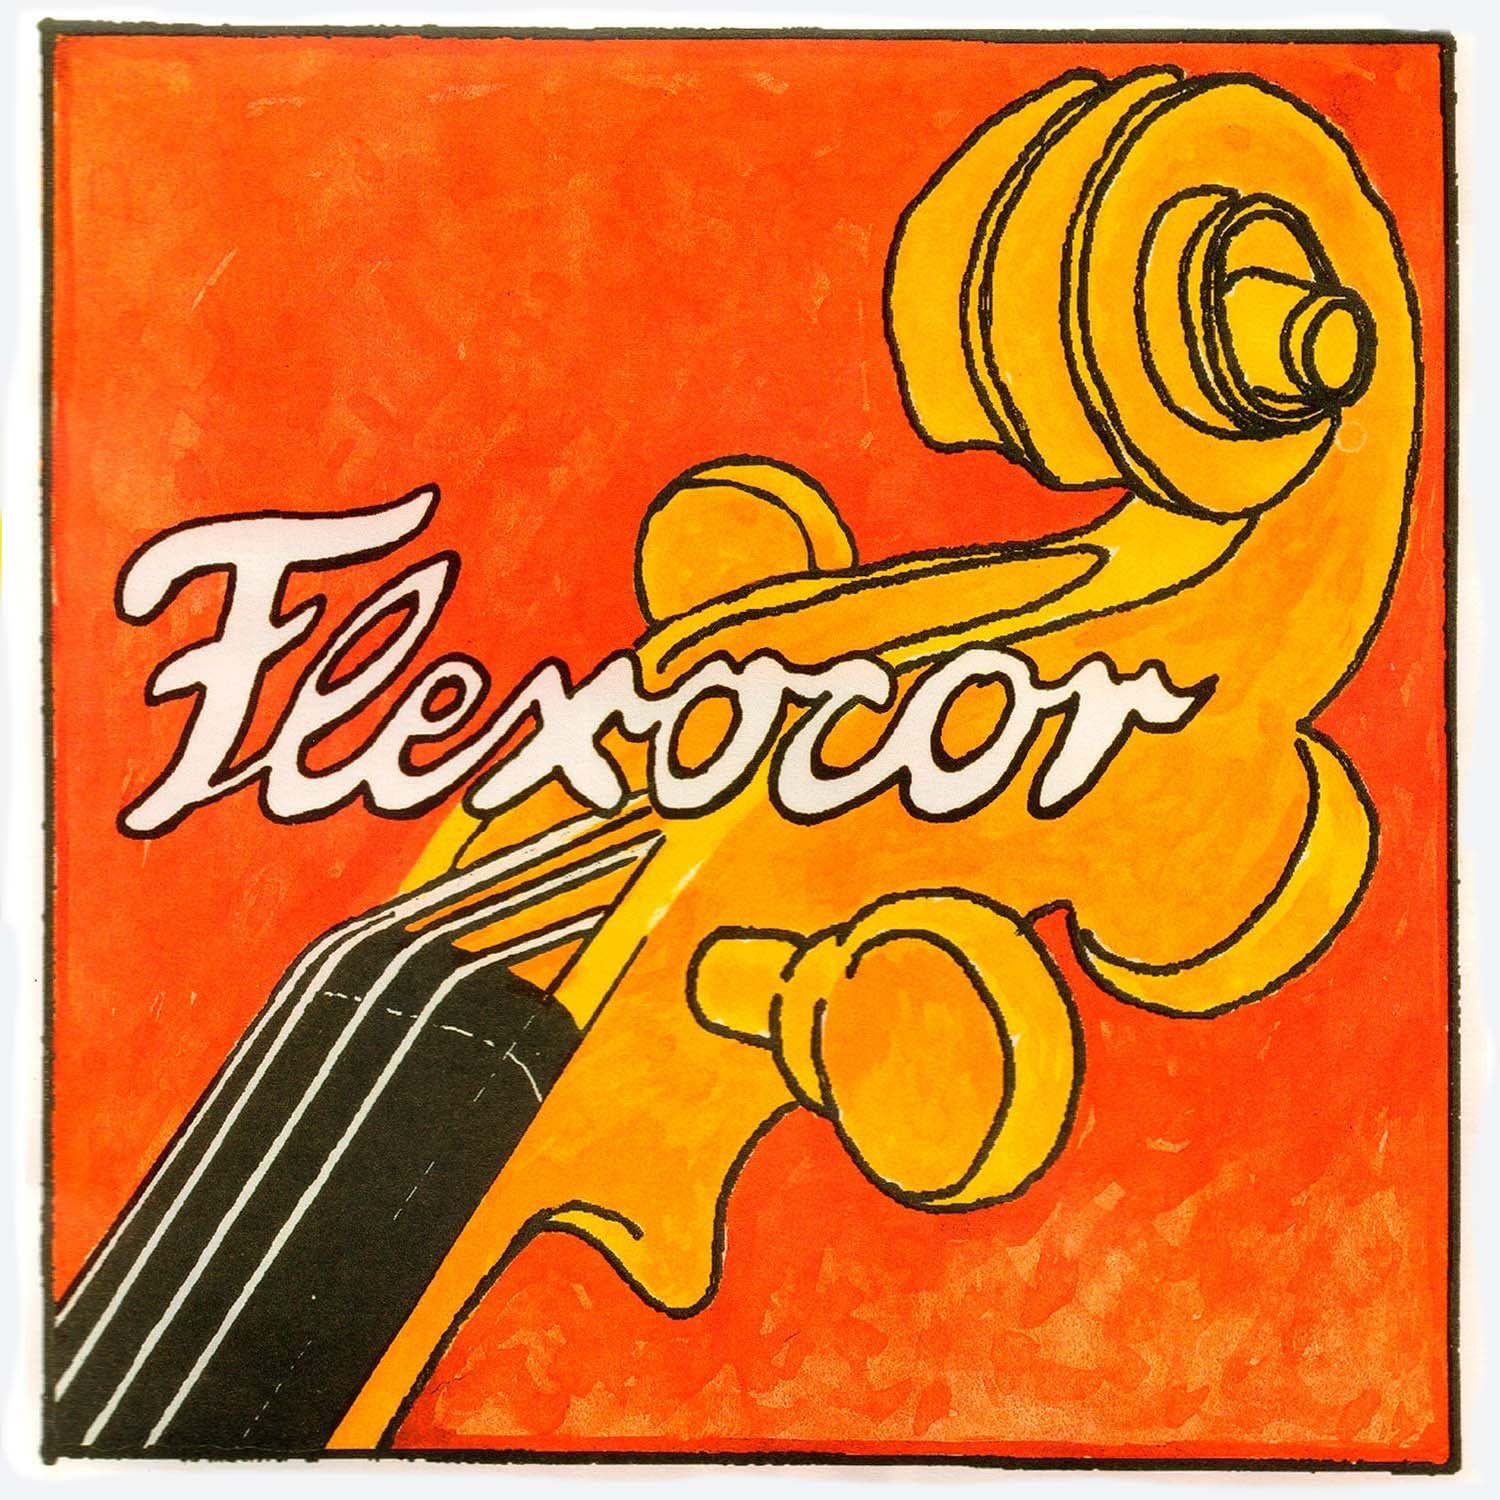 Pirastro Flexocor Cello String Set